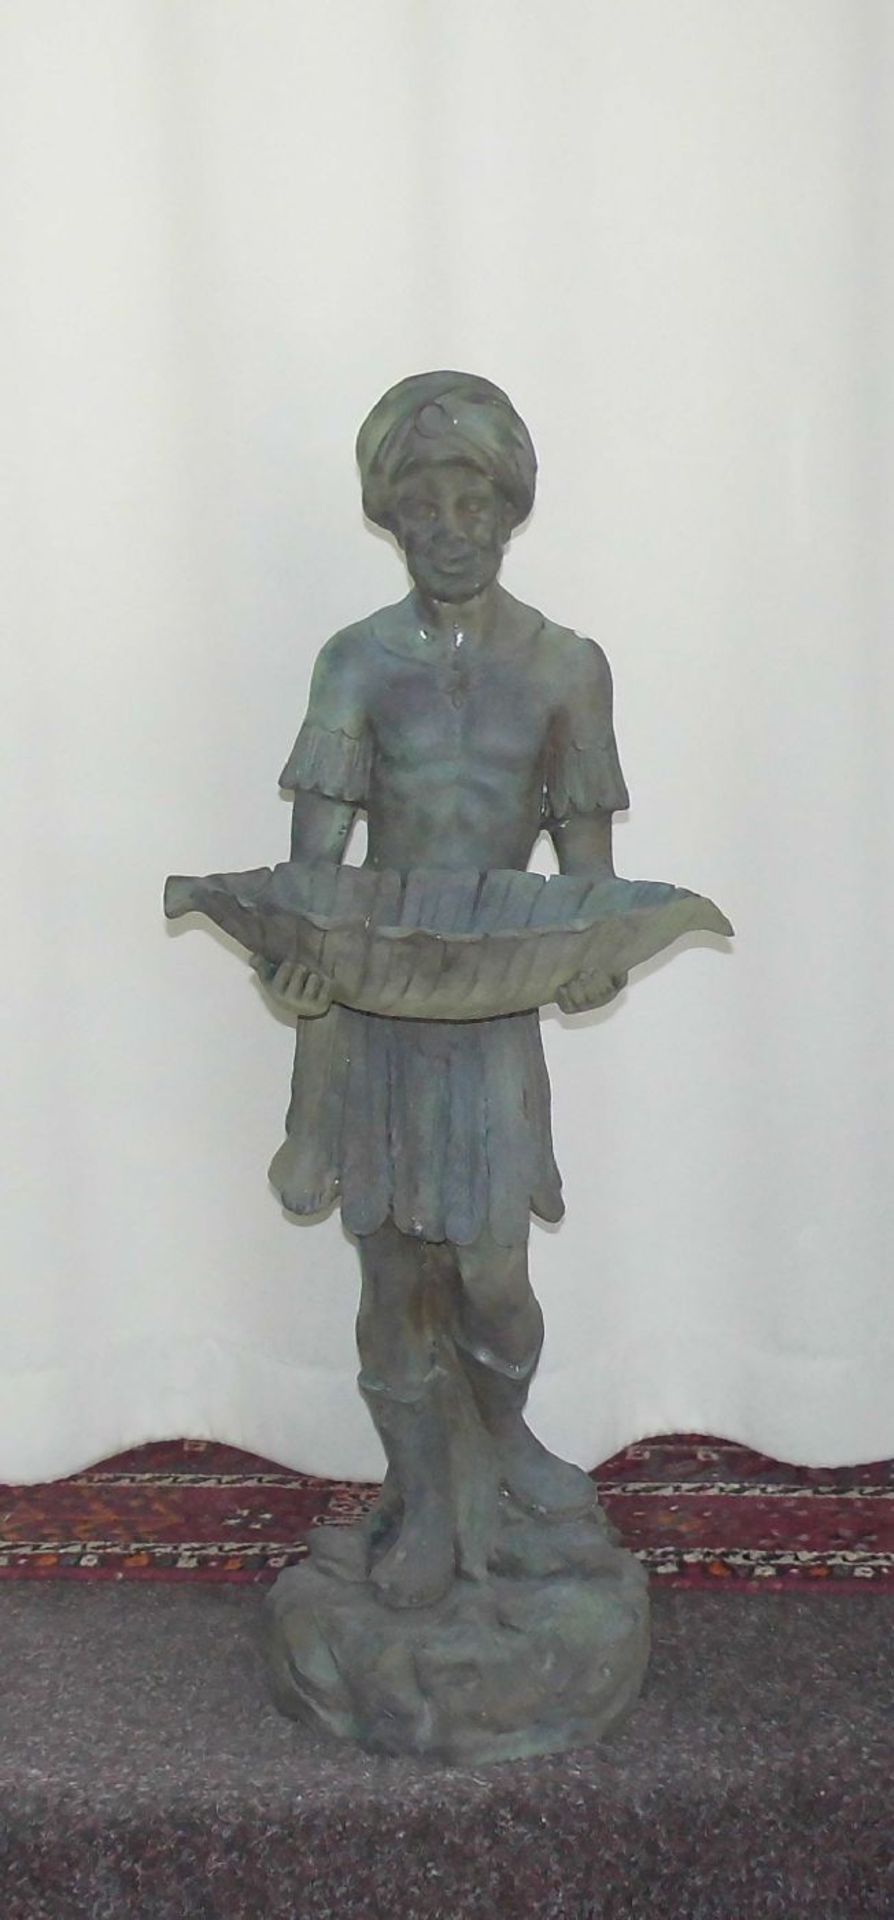 ANONYMUS (20. Jh.), Skulptur / sculpture: "Mohr", Bronze mit grüner Patina. Auf rundem Felspostament